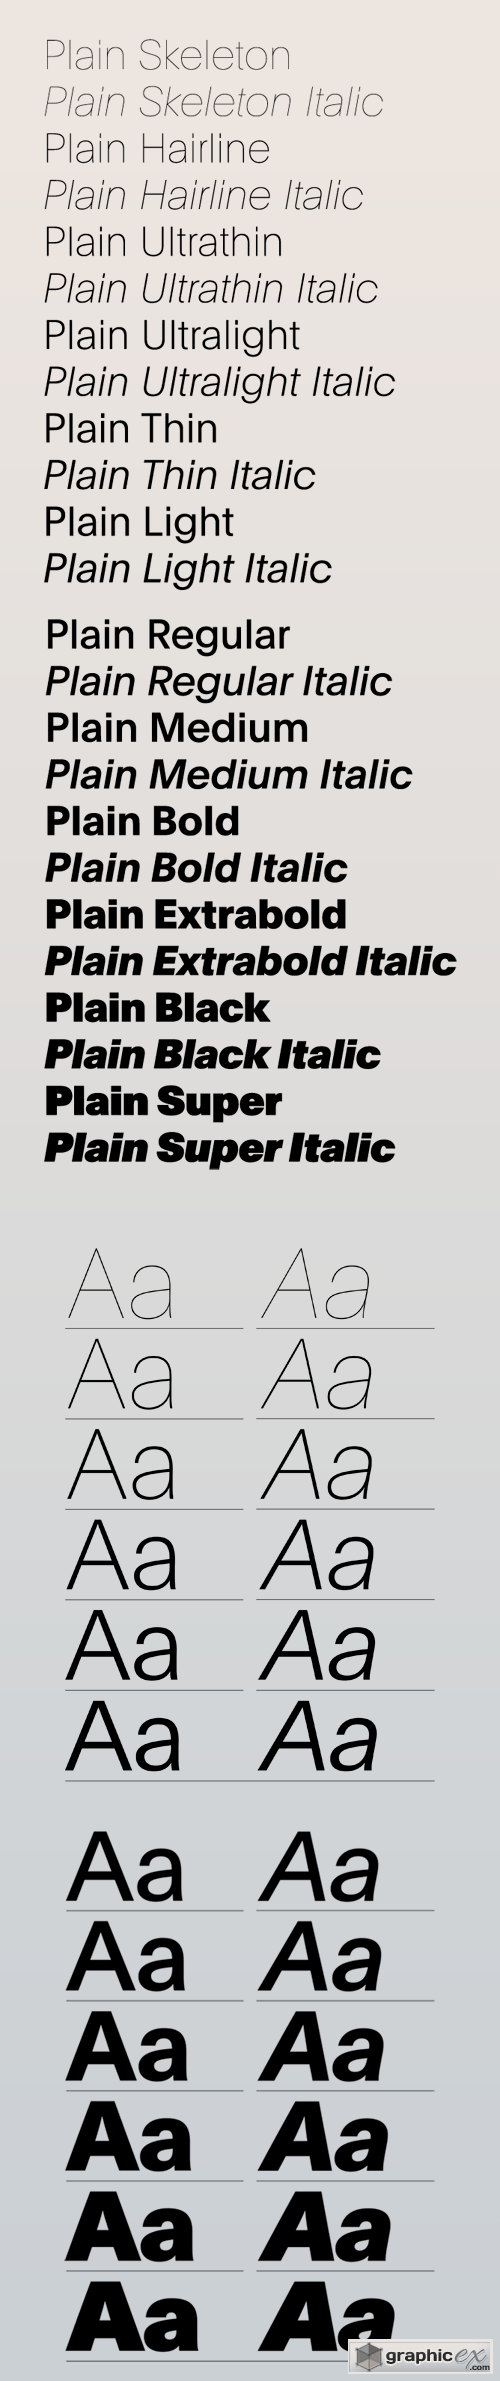 Plain Font Family